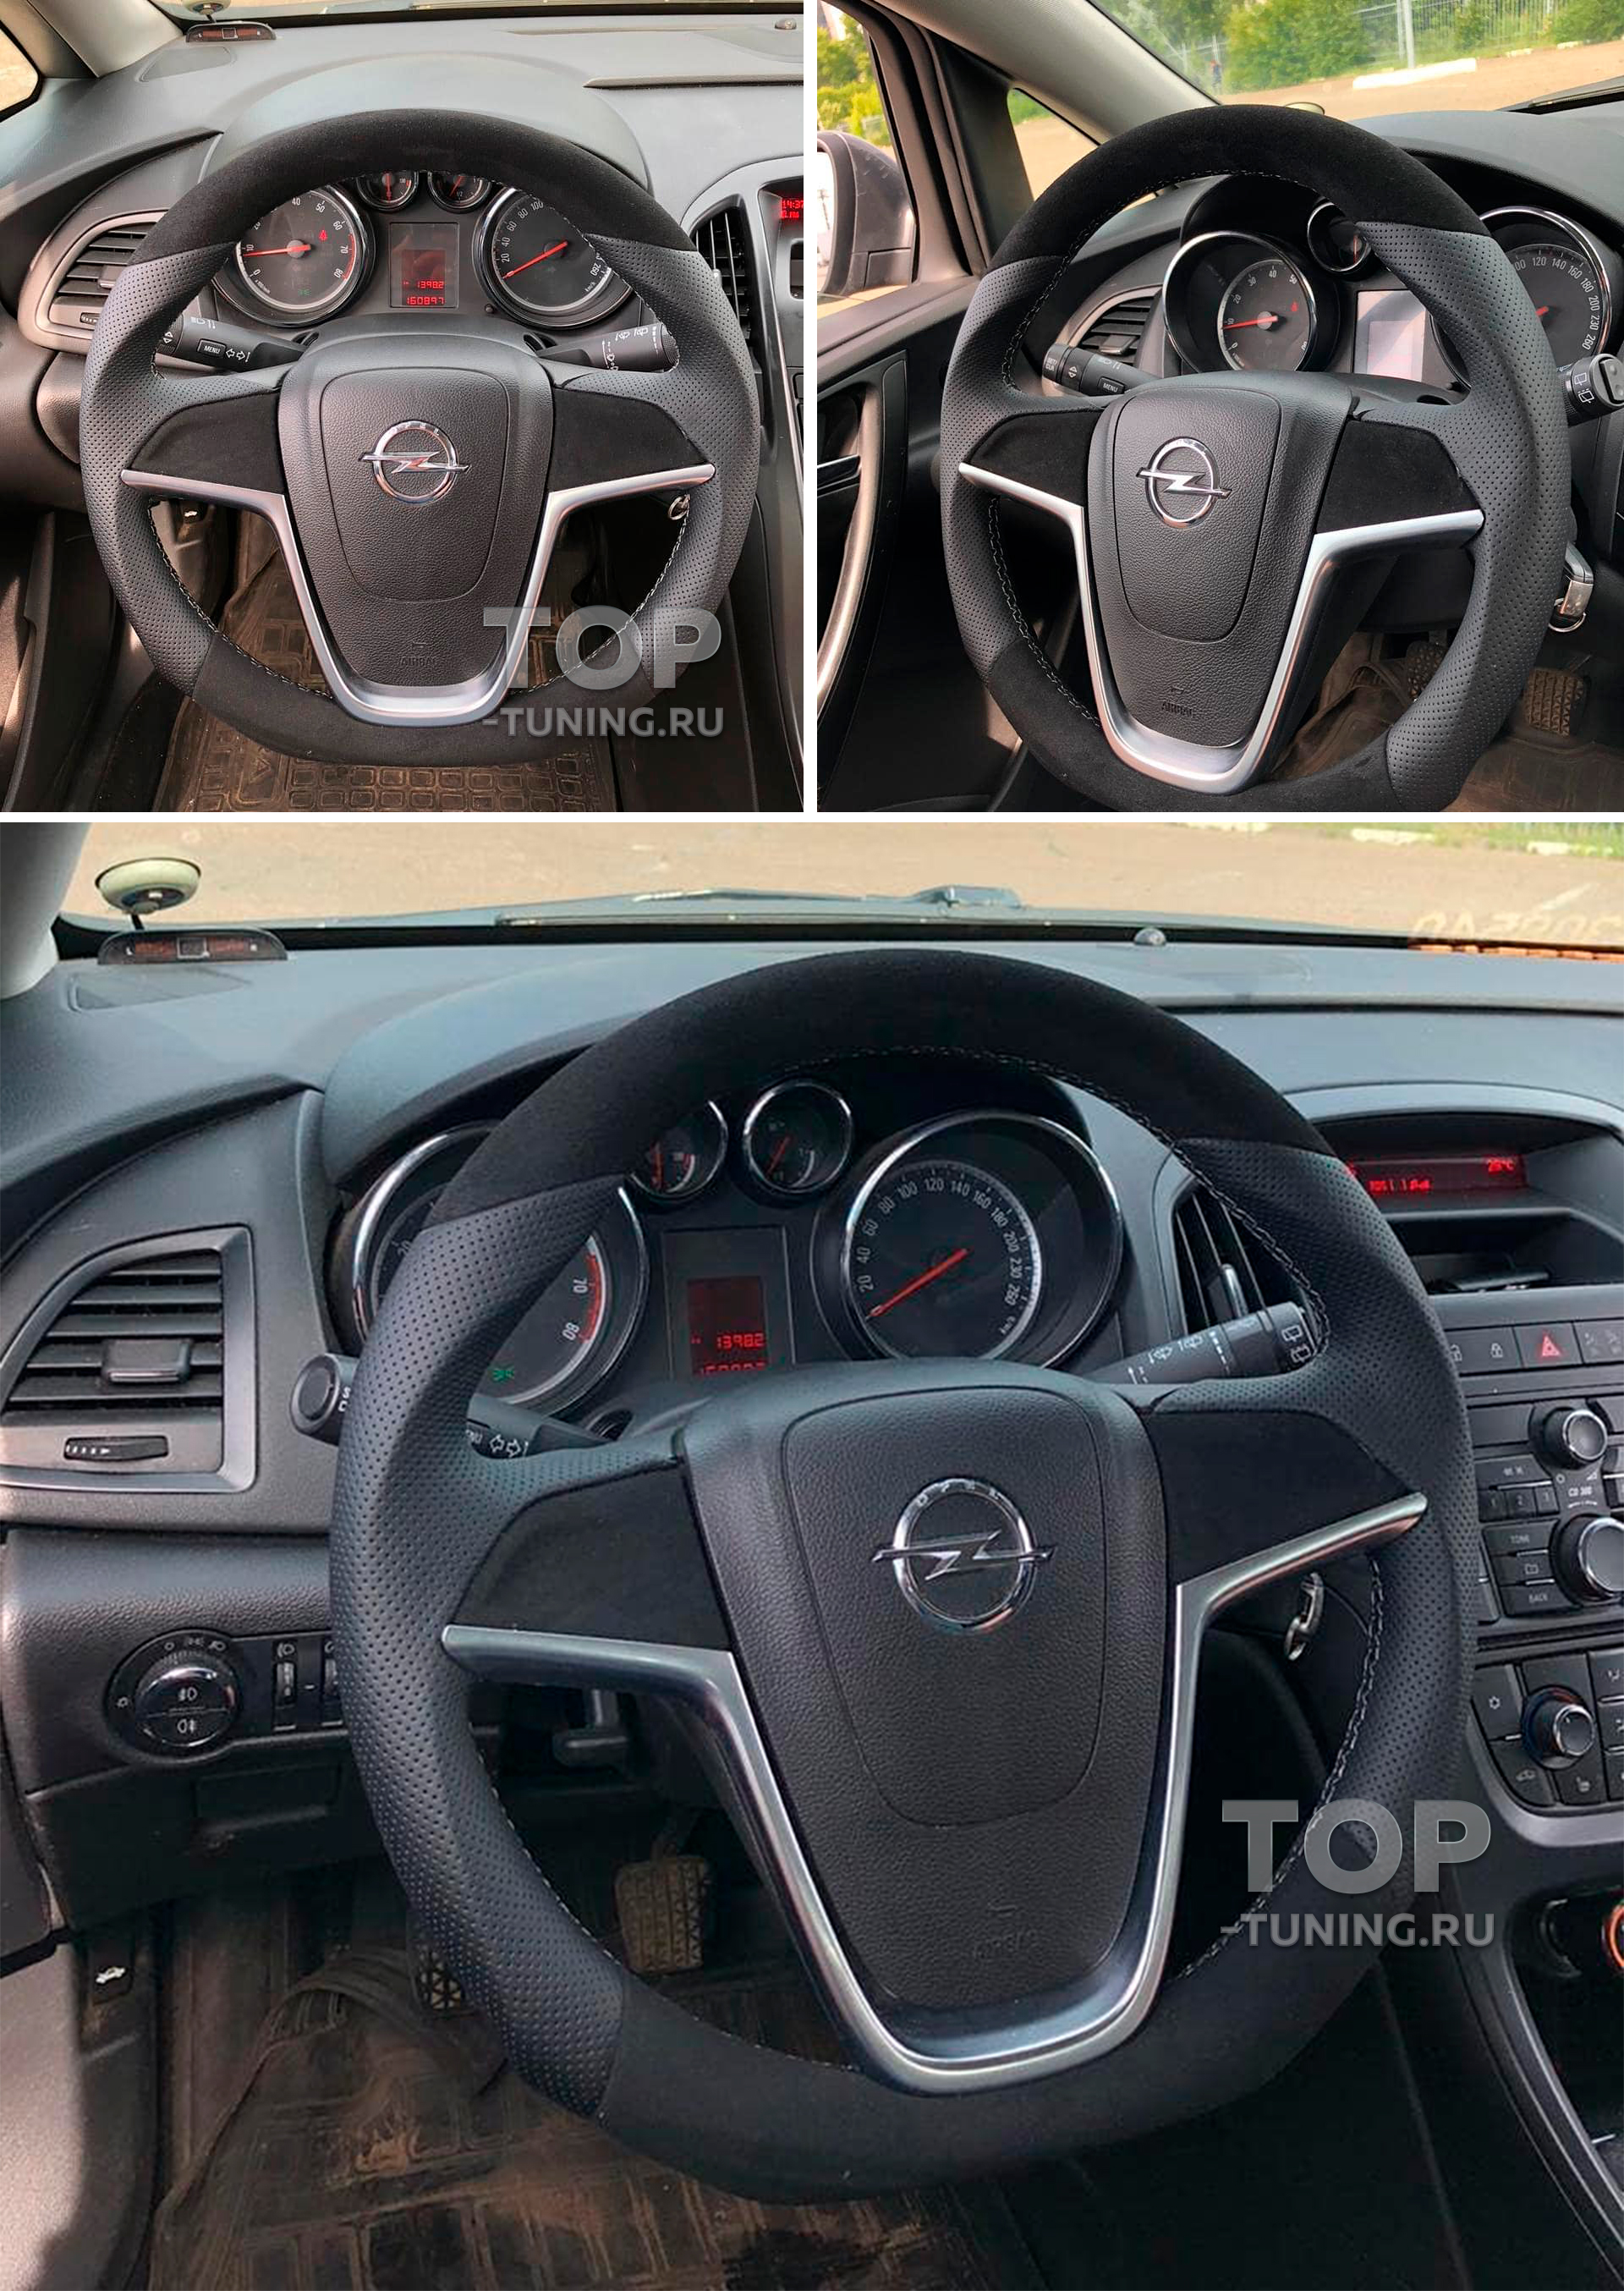 Замена поршневых колец и сальников клапанов Opel Astra G. Часть 1